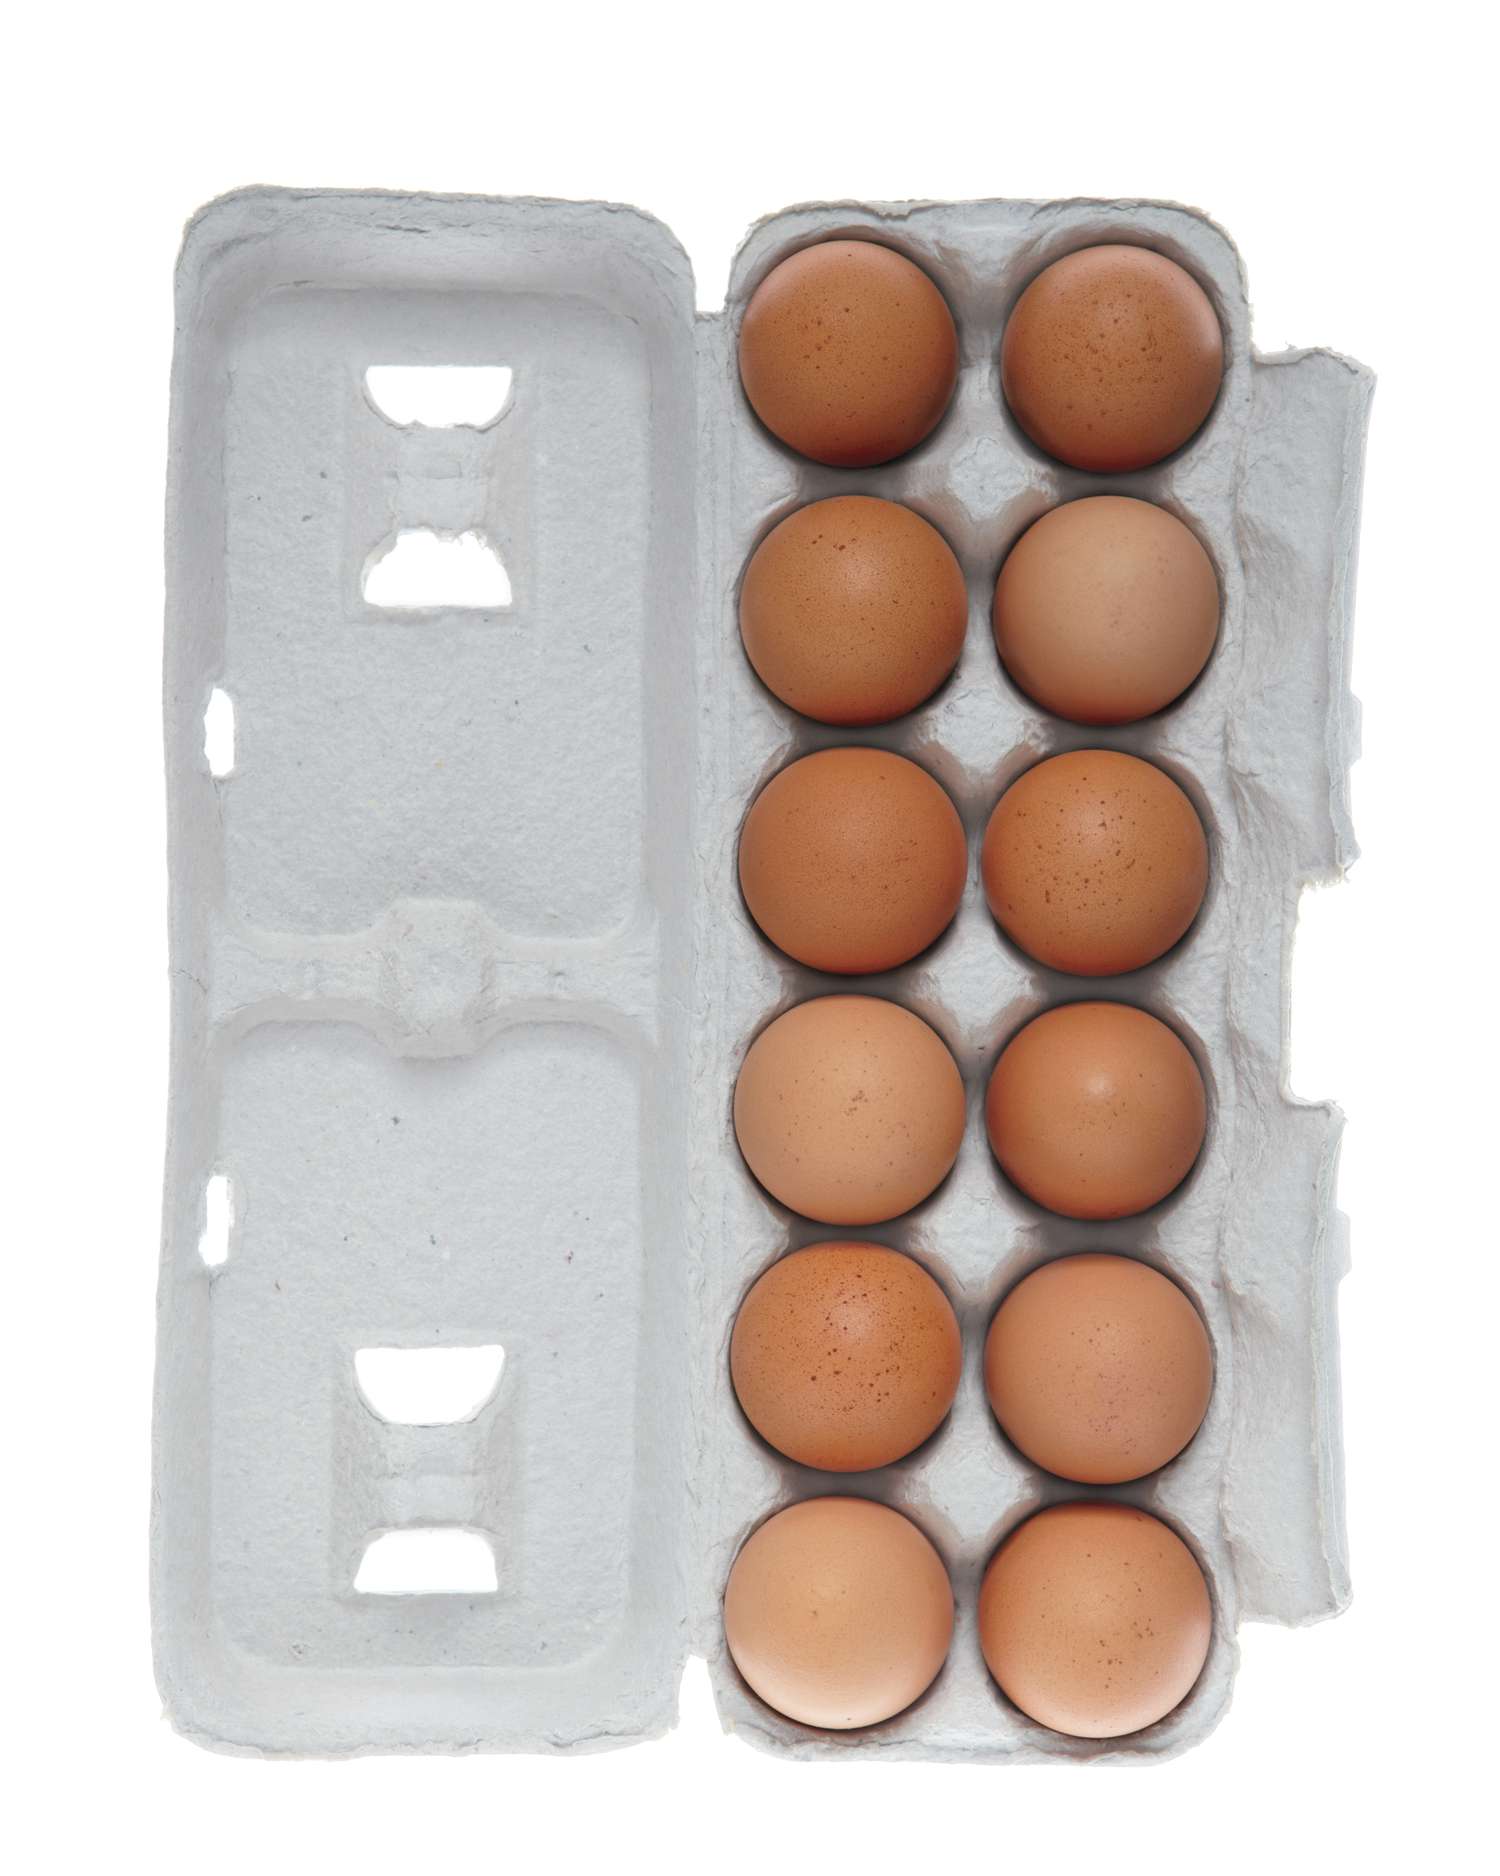 egg-carton-001-0814.jpg